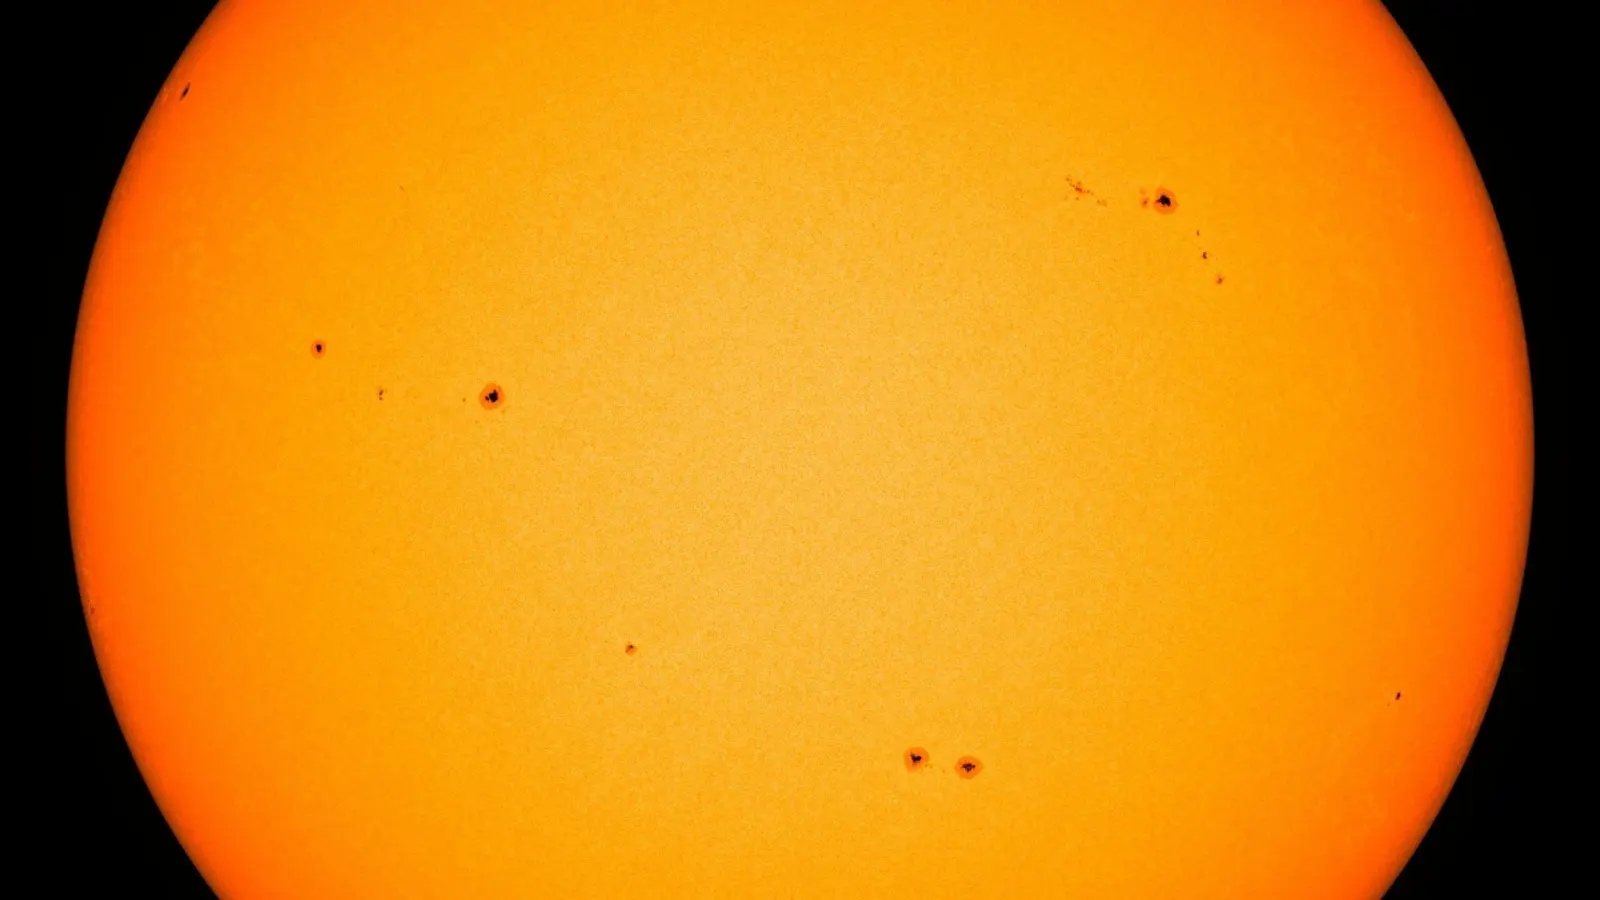 Sonnenflecken sind auf der Oberfläche der Sonne zu sehen. Wissenschaftler haben zuletzt mehrfach starke Eruptionen und Sonnenstürme gemessen. (Foto: -/Nasa/dpa)